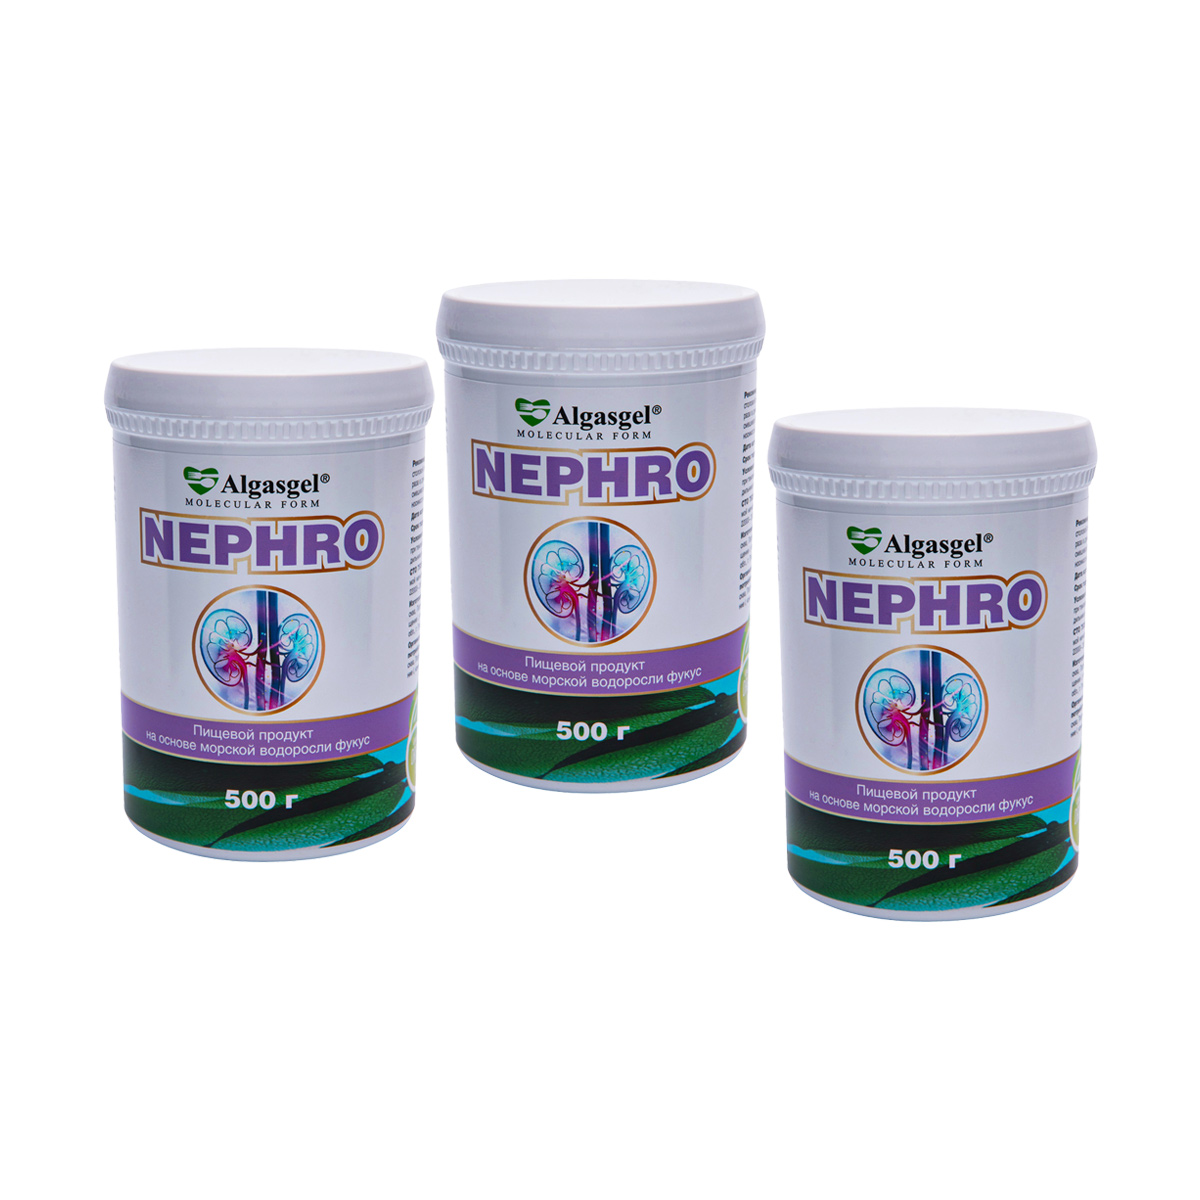 Algasgel Nephro для комплексного оздоровления почек и мочевыделительной системы (2 уп. по 500 г + 1 в подарок) algasgel nephro для комплексного оздоровления почек и мочевыделительной системы 2 уп по 500 г 1 в подарок